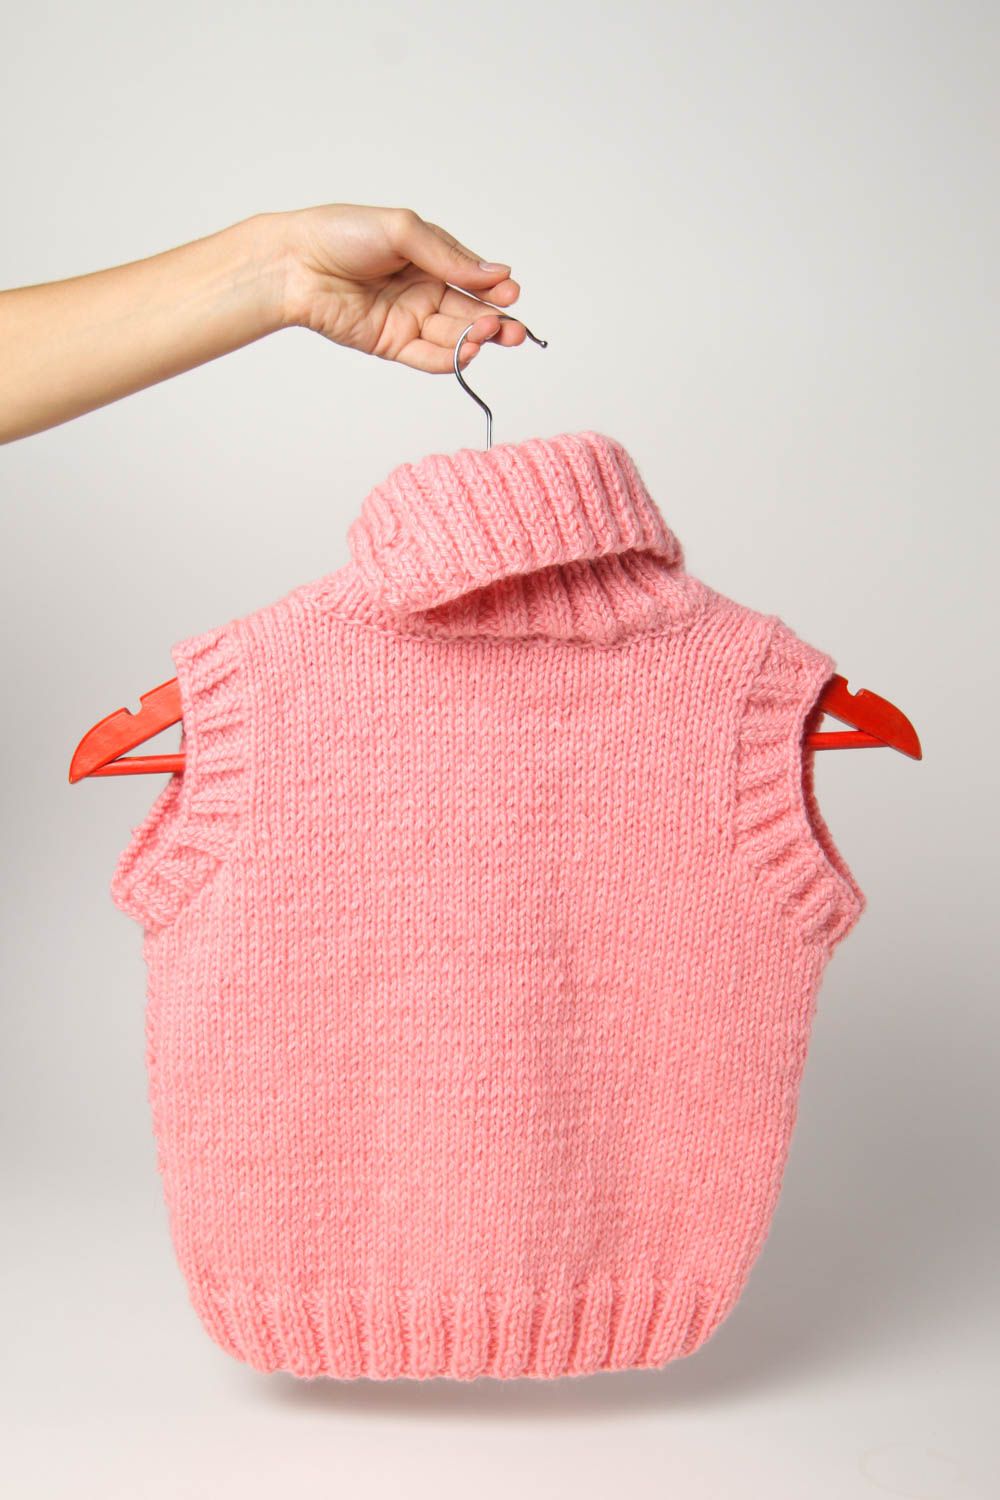 Chaleco infantil artesanal tejido a dos agujas ropa para niñas regalo original foto 3